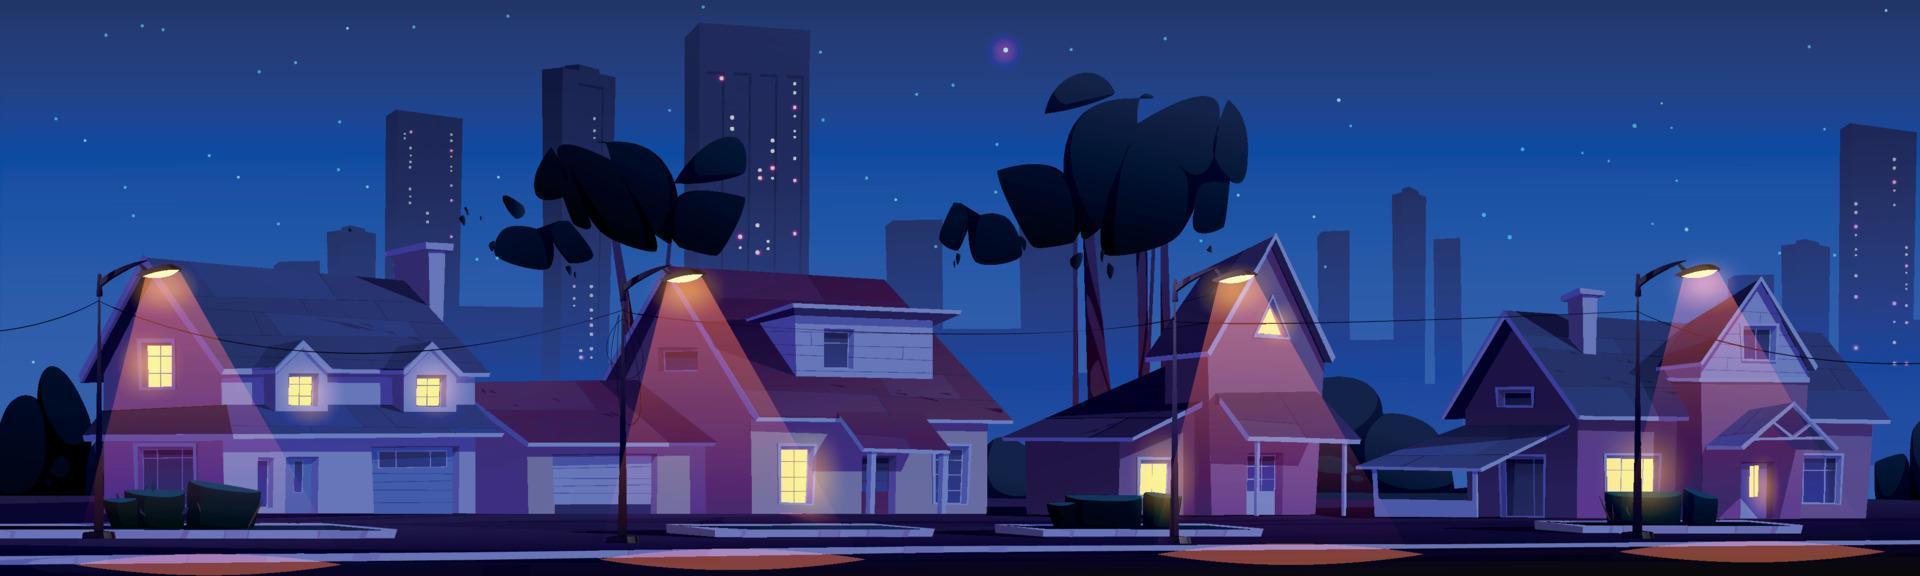 Straße im Vorort mit Häusern in der Nacht vektor